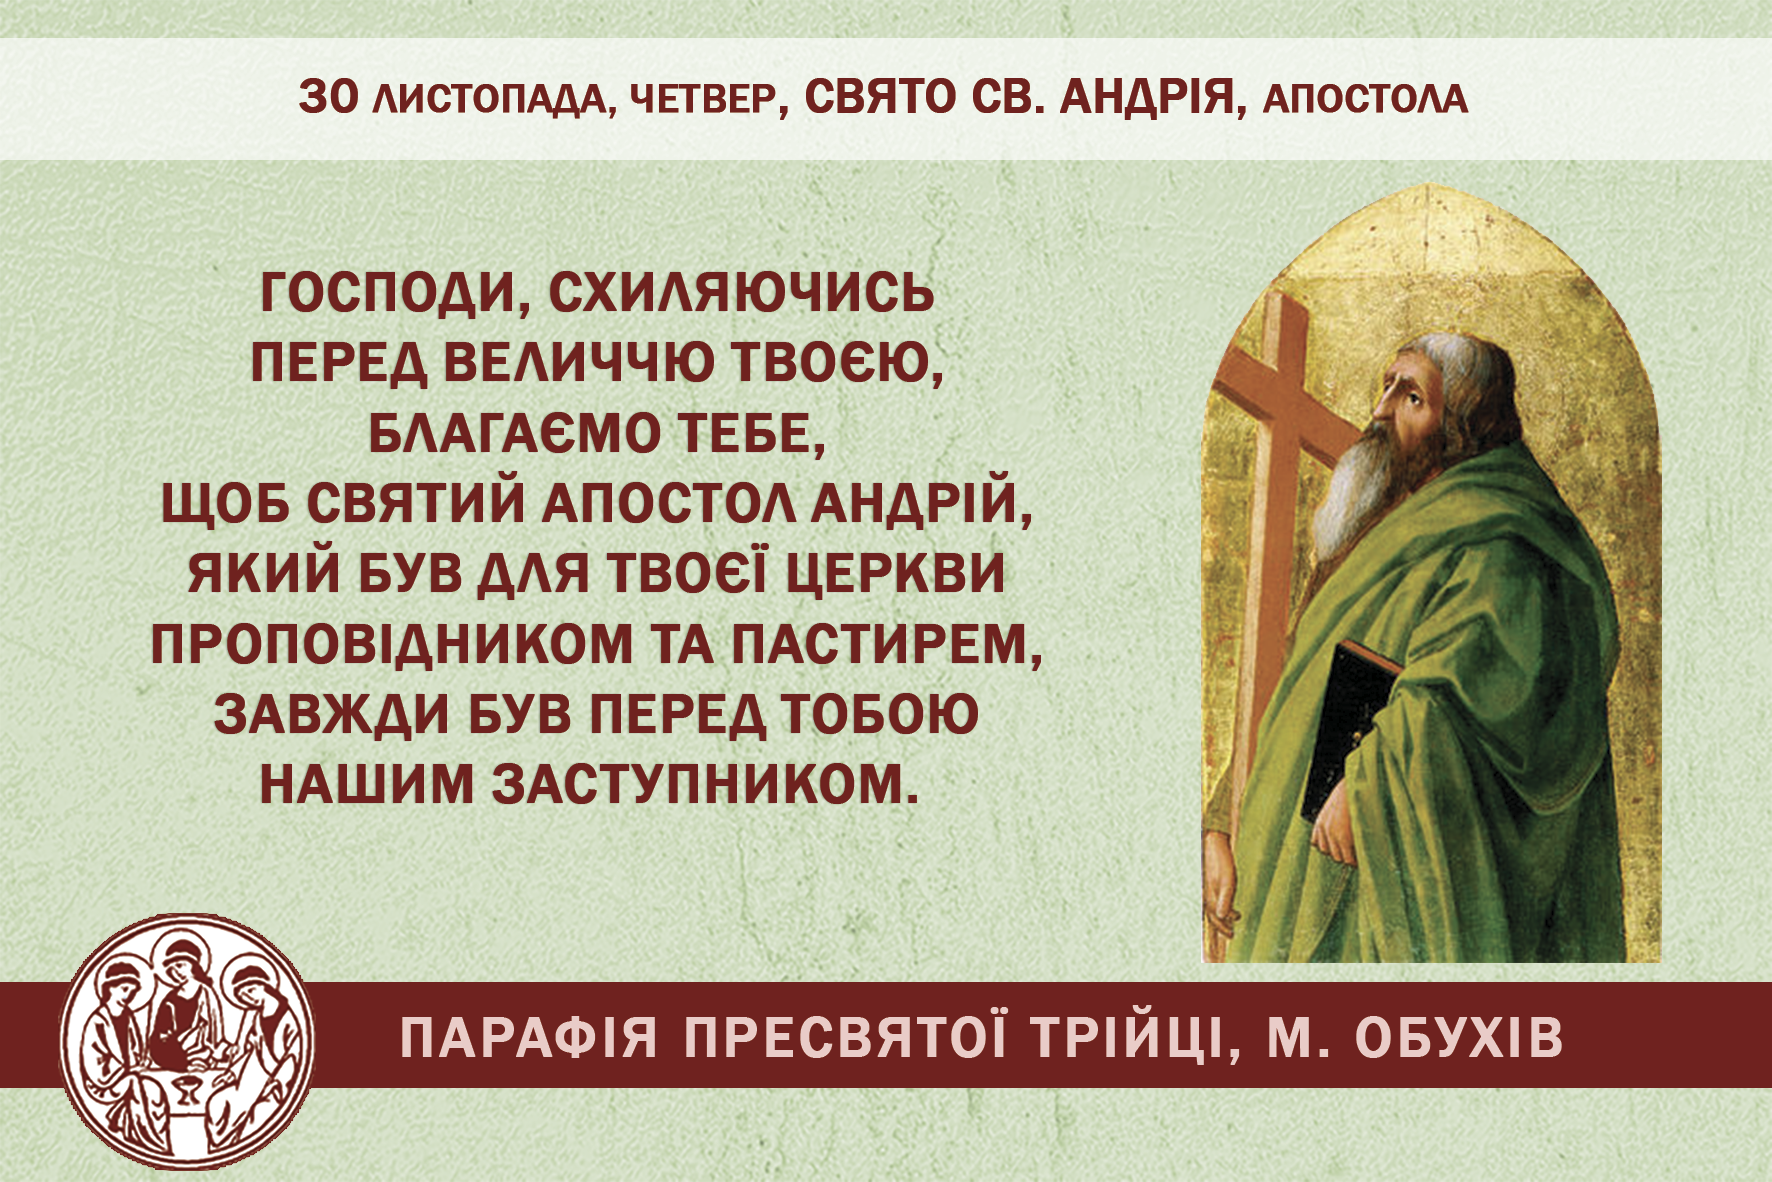 30 листопада, четвер, свято св. Андрія, апостола